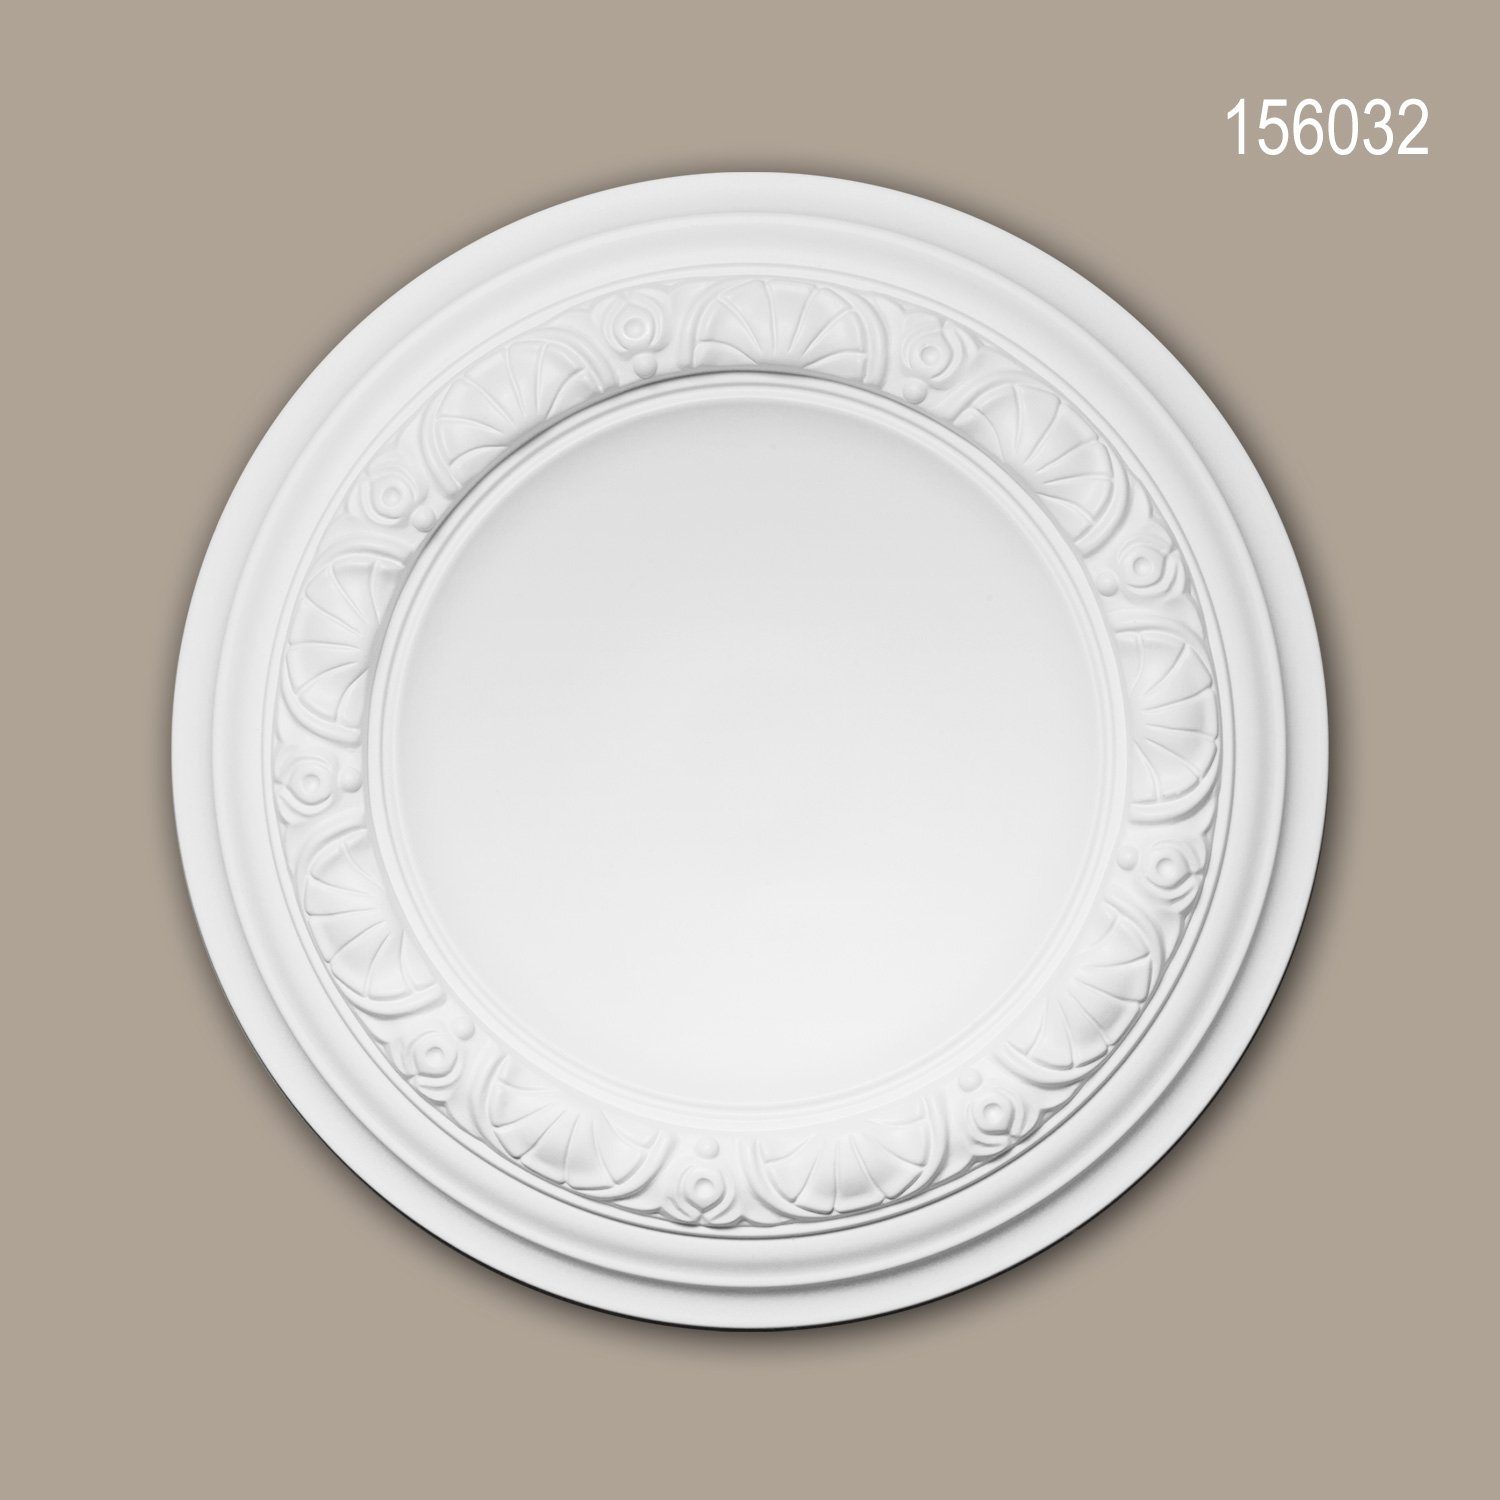 Profhome Decken-Rosette 156032 (Rosette, 1 St., Deckenrosette, Medallion, Stuckrosette, Deckenelement, Zierelement, Durchmesser 32 cm), weiß, vorgrundiert, Stil: Neo-Renaissance